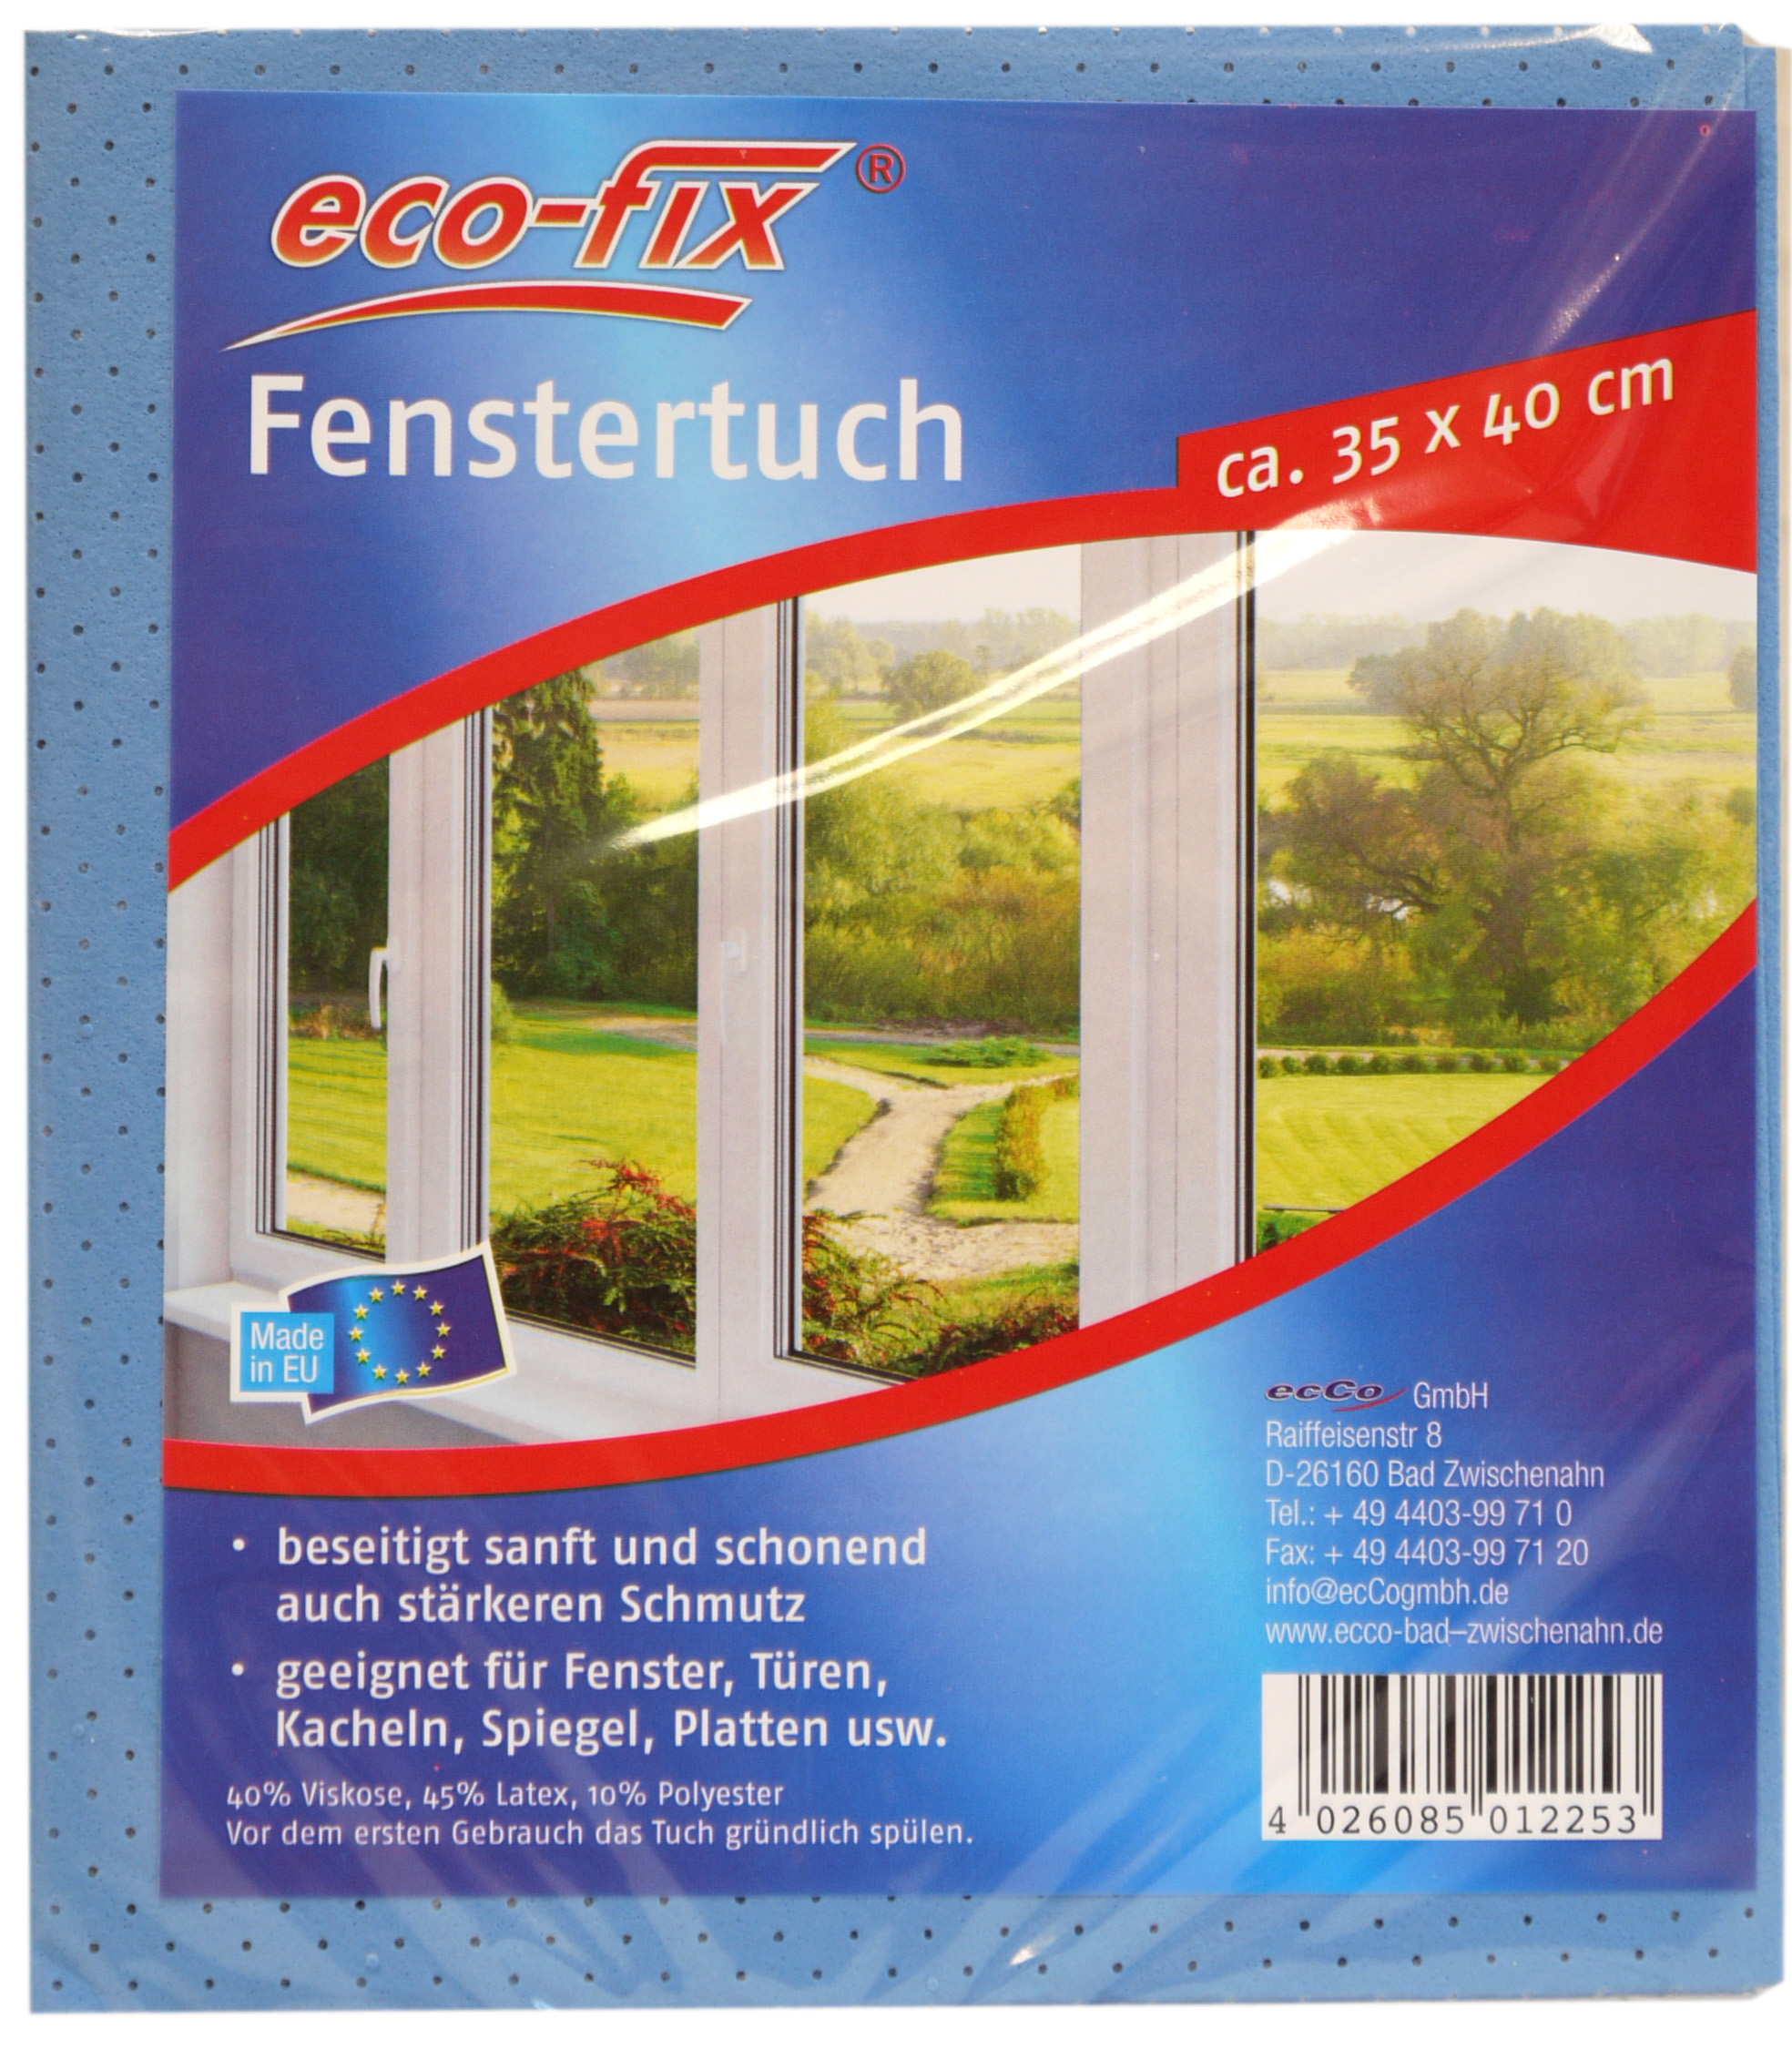 01225 - eco-fix Fenstertuch 1er -gelocht- 35x40cm